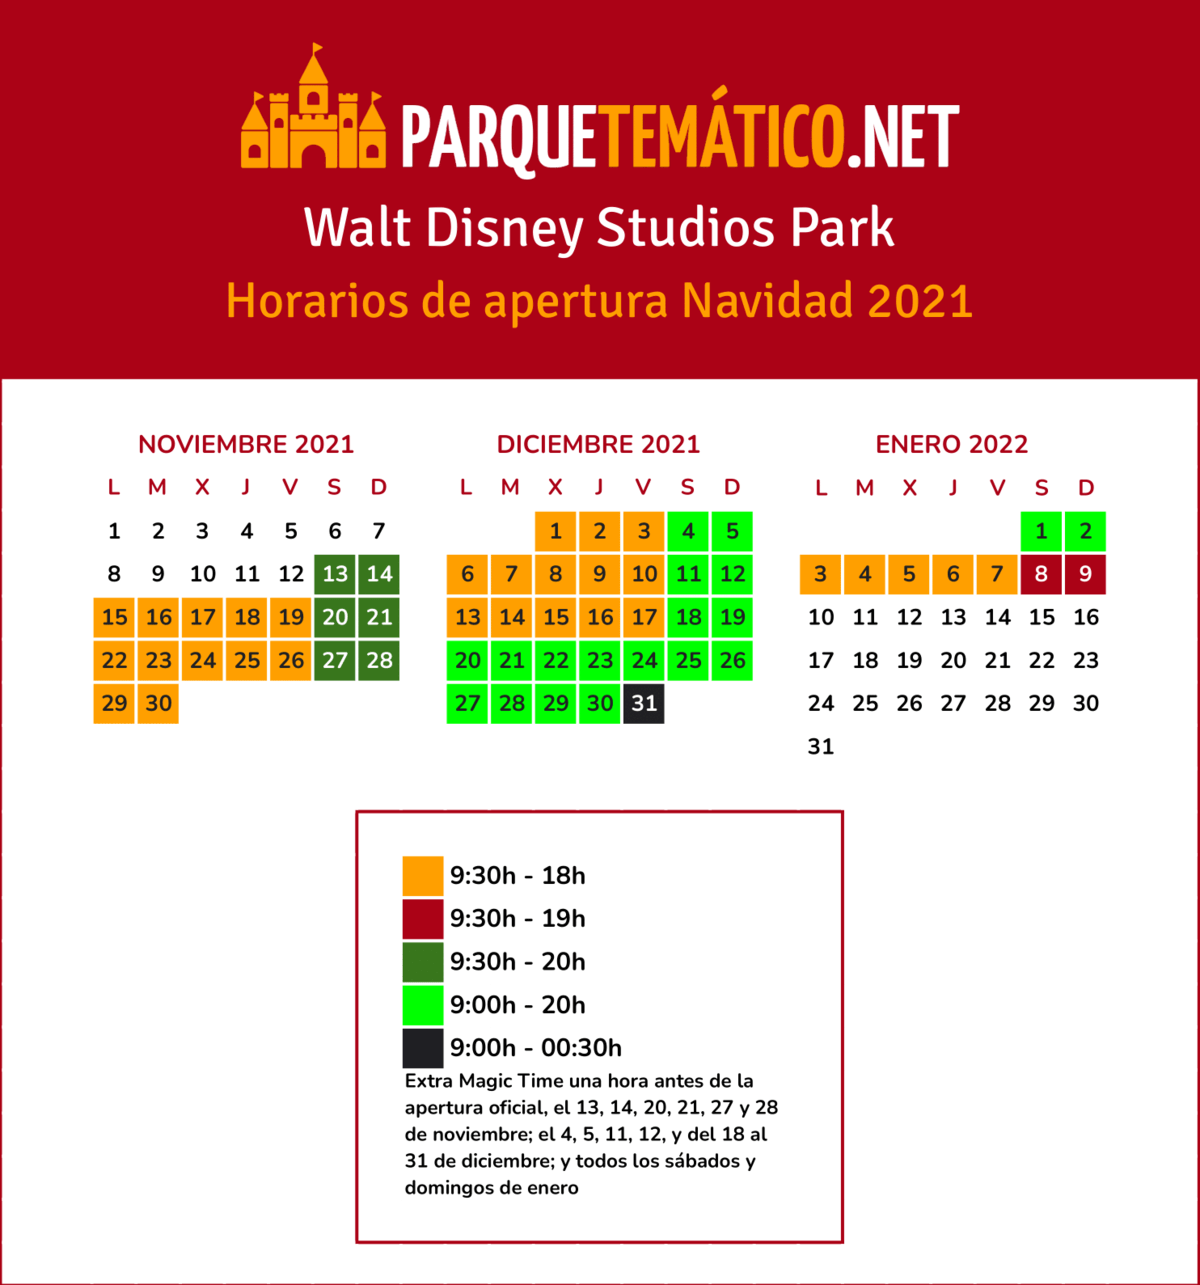 Calendario y horarios Navidad Disneyland Paris Walt Disney Studios Park 2021